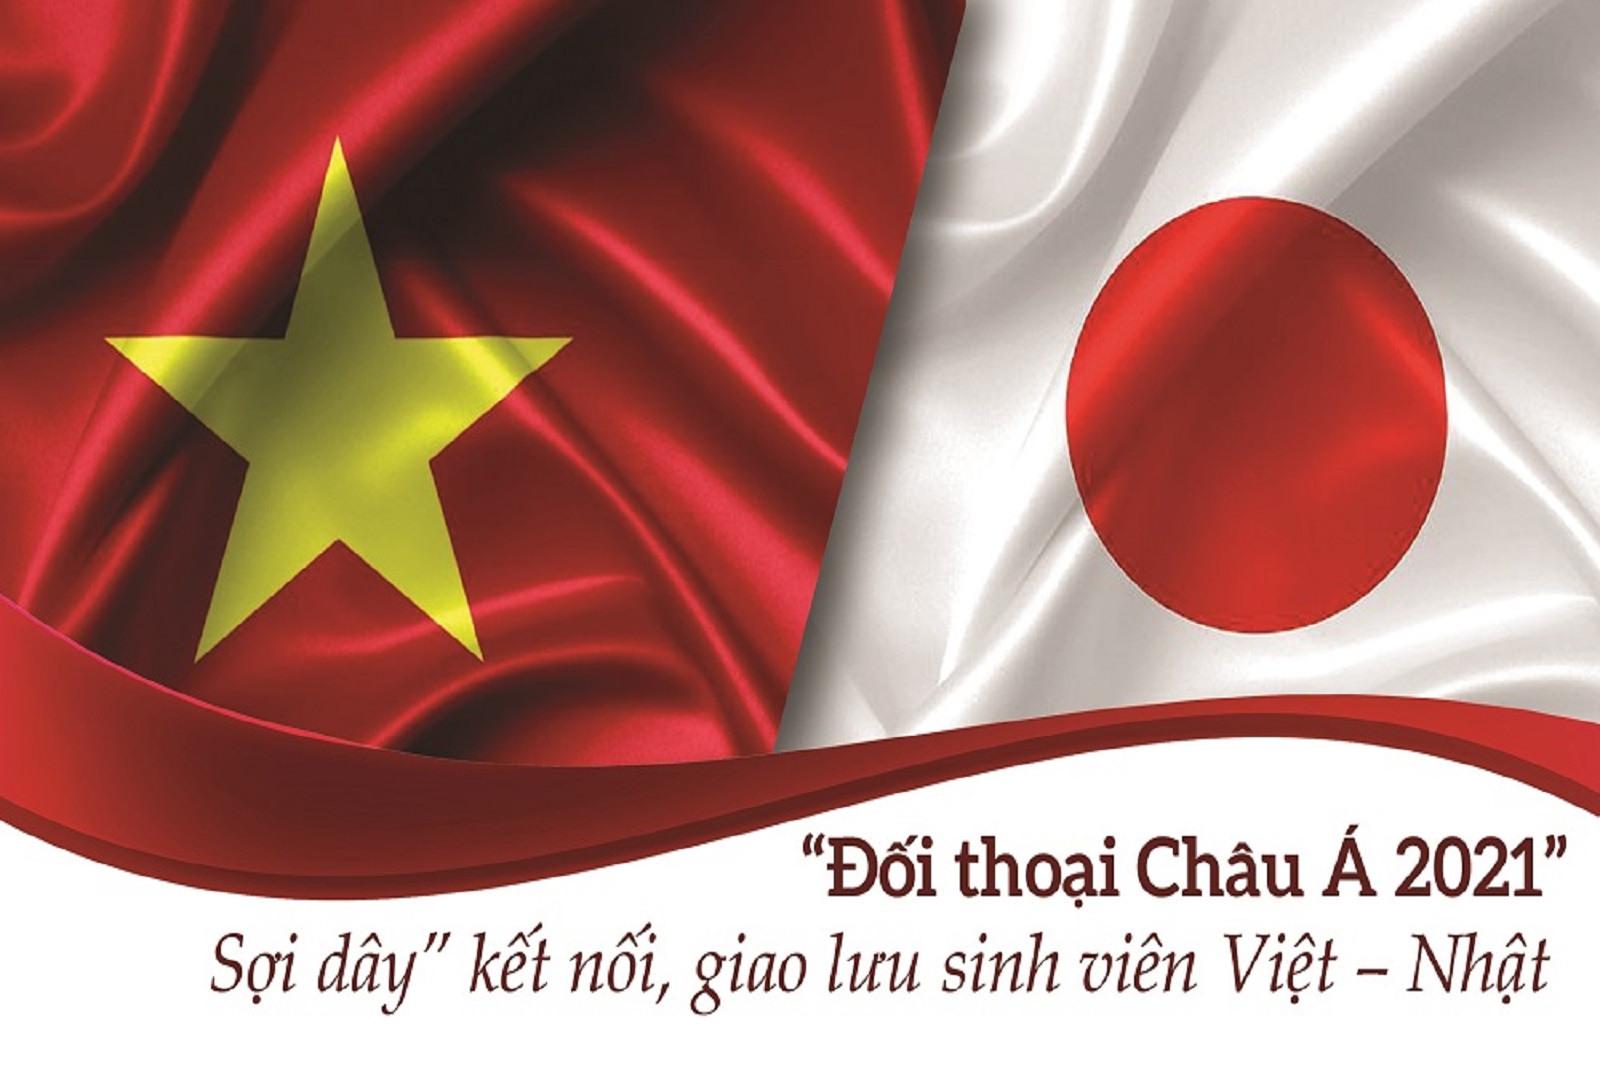  “Đối thoại Châu Á 2021”: “Sợi dây” kết nối, giao lưu sinh viên Việt – Nhật